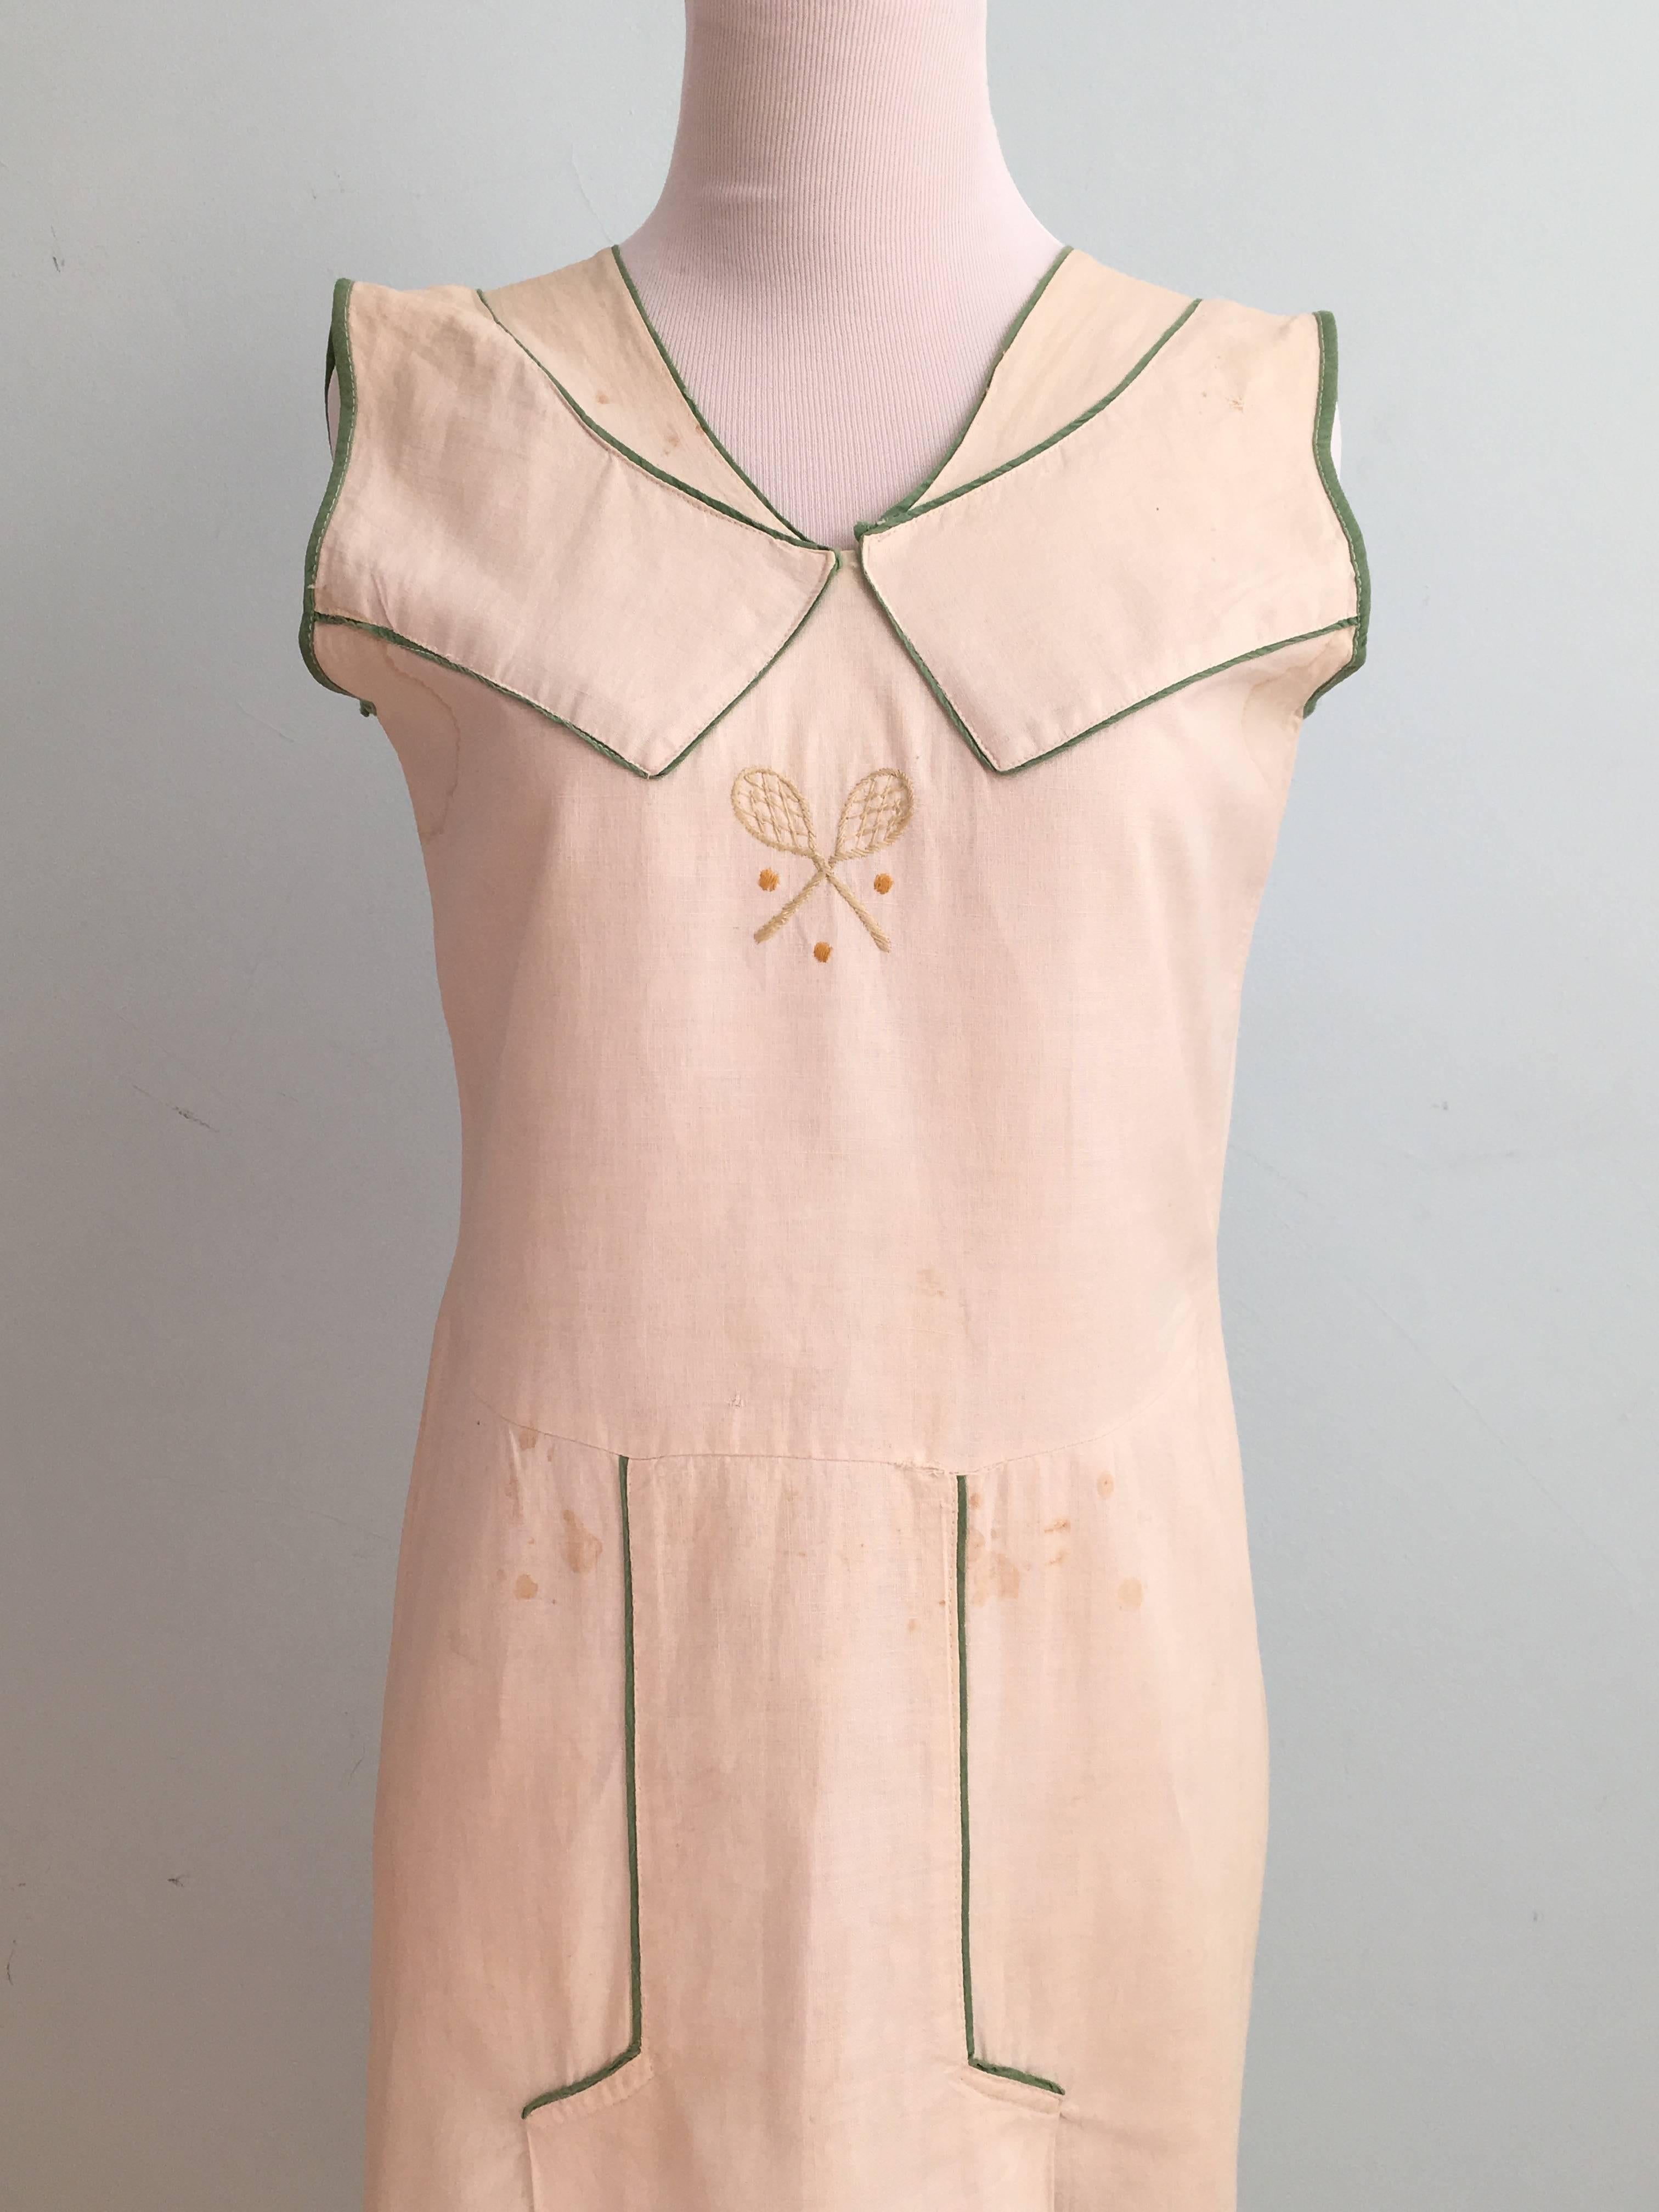 1920s tennis dress